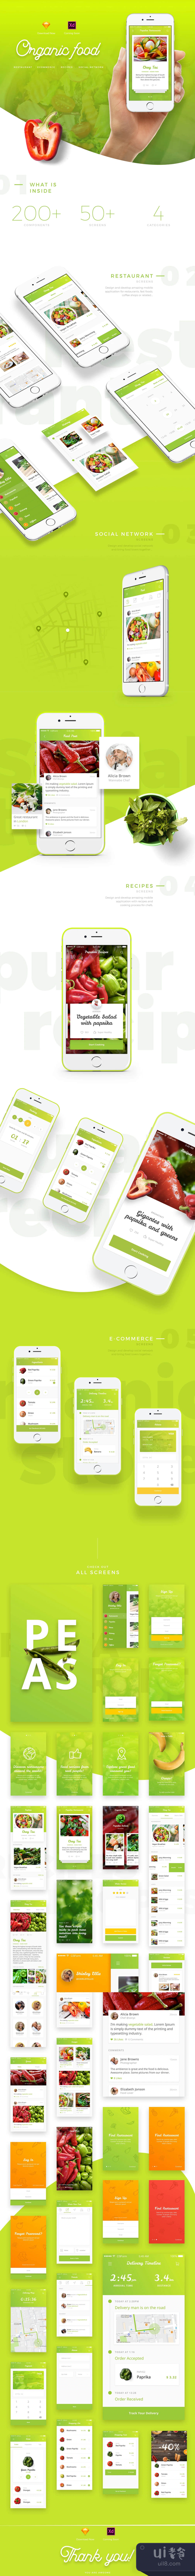 有机食品用户界面套件 (Organic Food UI Kit)插图1